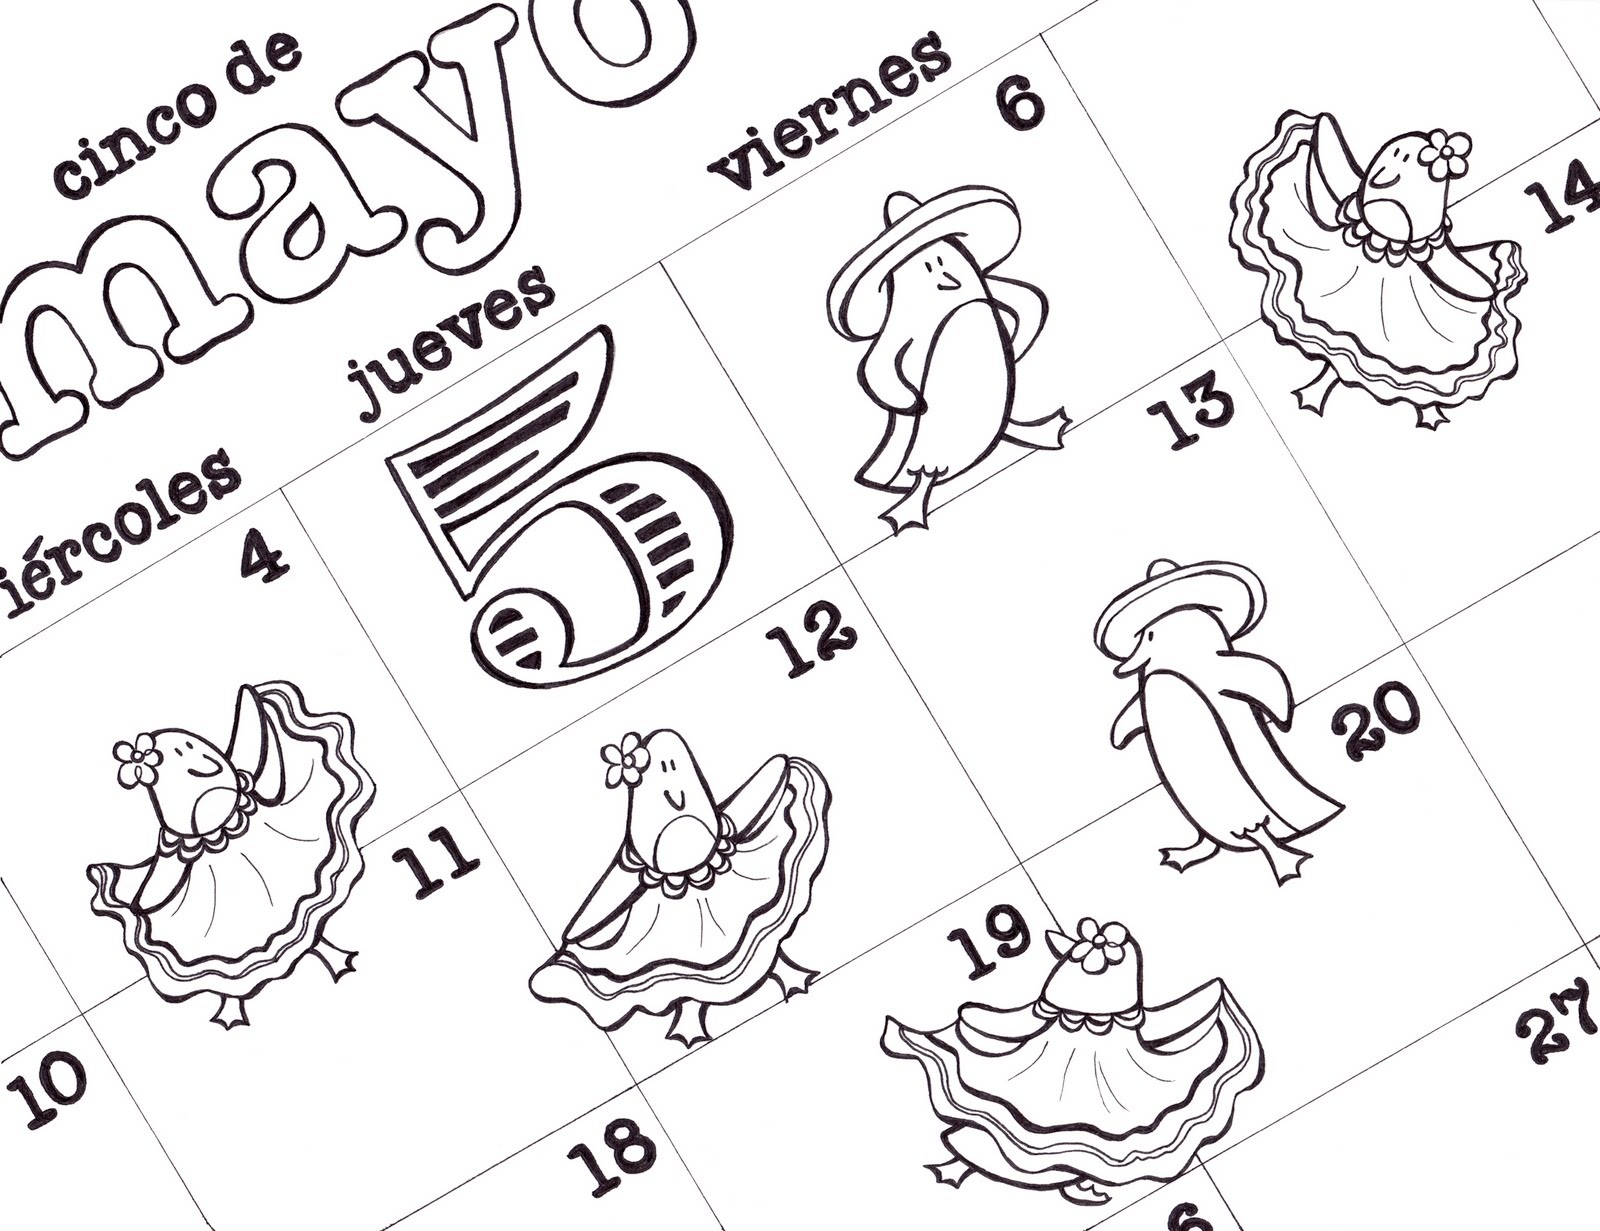 Free Printable Cinco De Mayo Coloring Pages For Kids - Best Coloring Pages For Kids